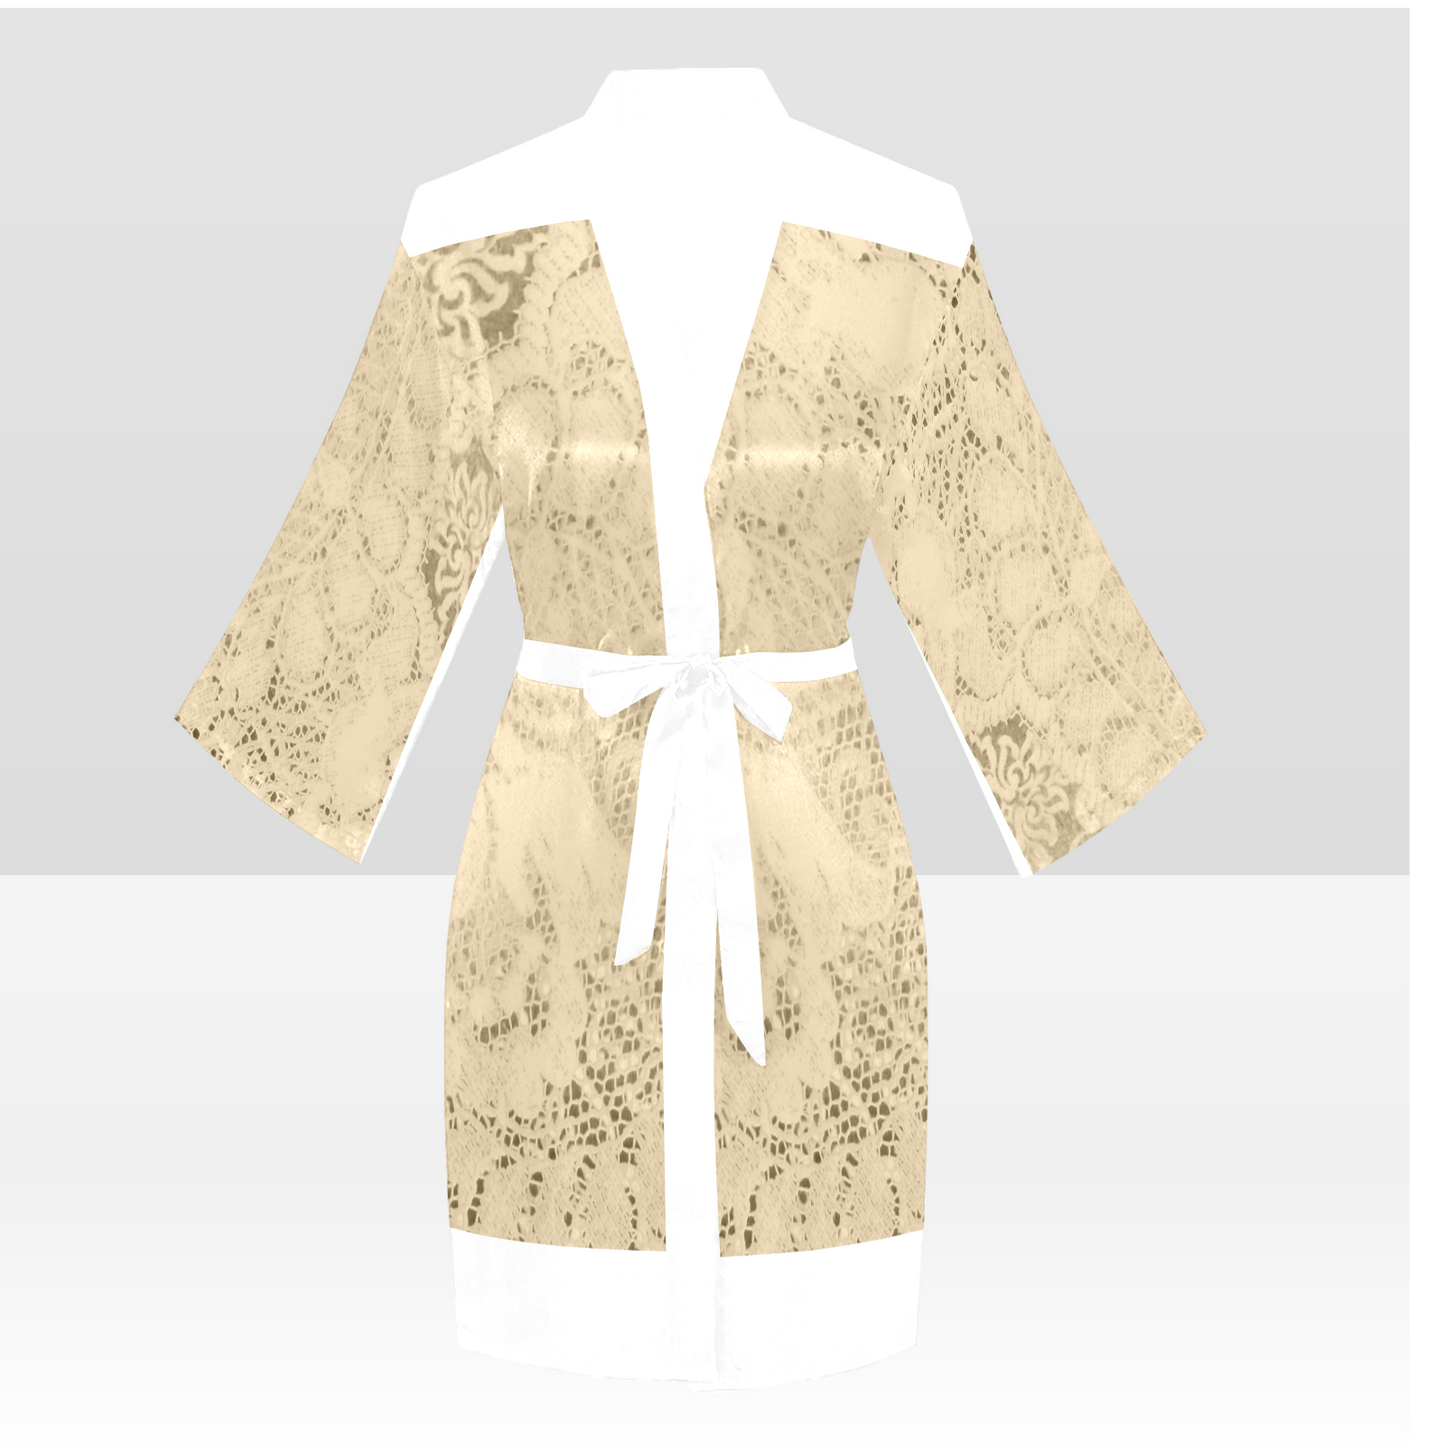 Victorian Lace Kimono Robe, Black or White Trim, Sizes XS to 2XL, Design 26